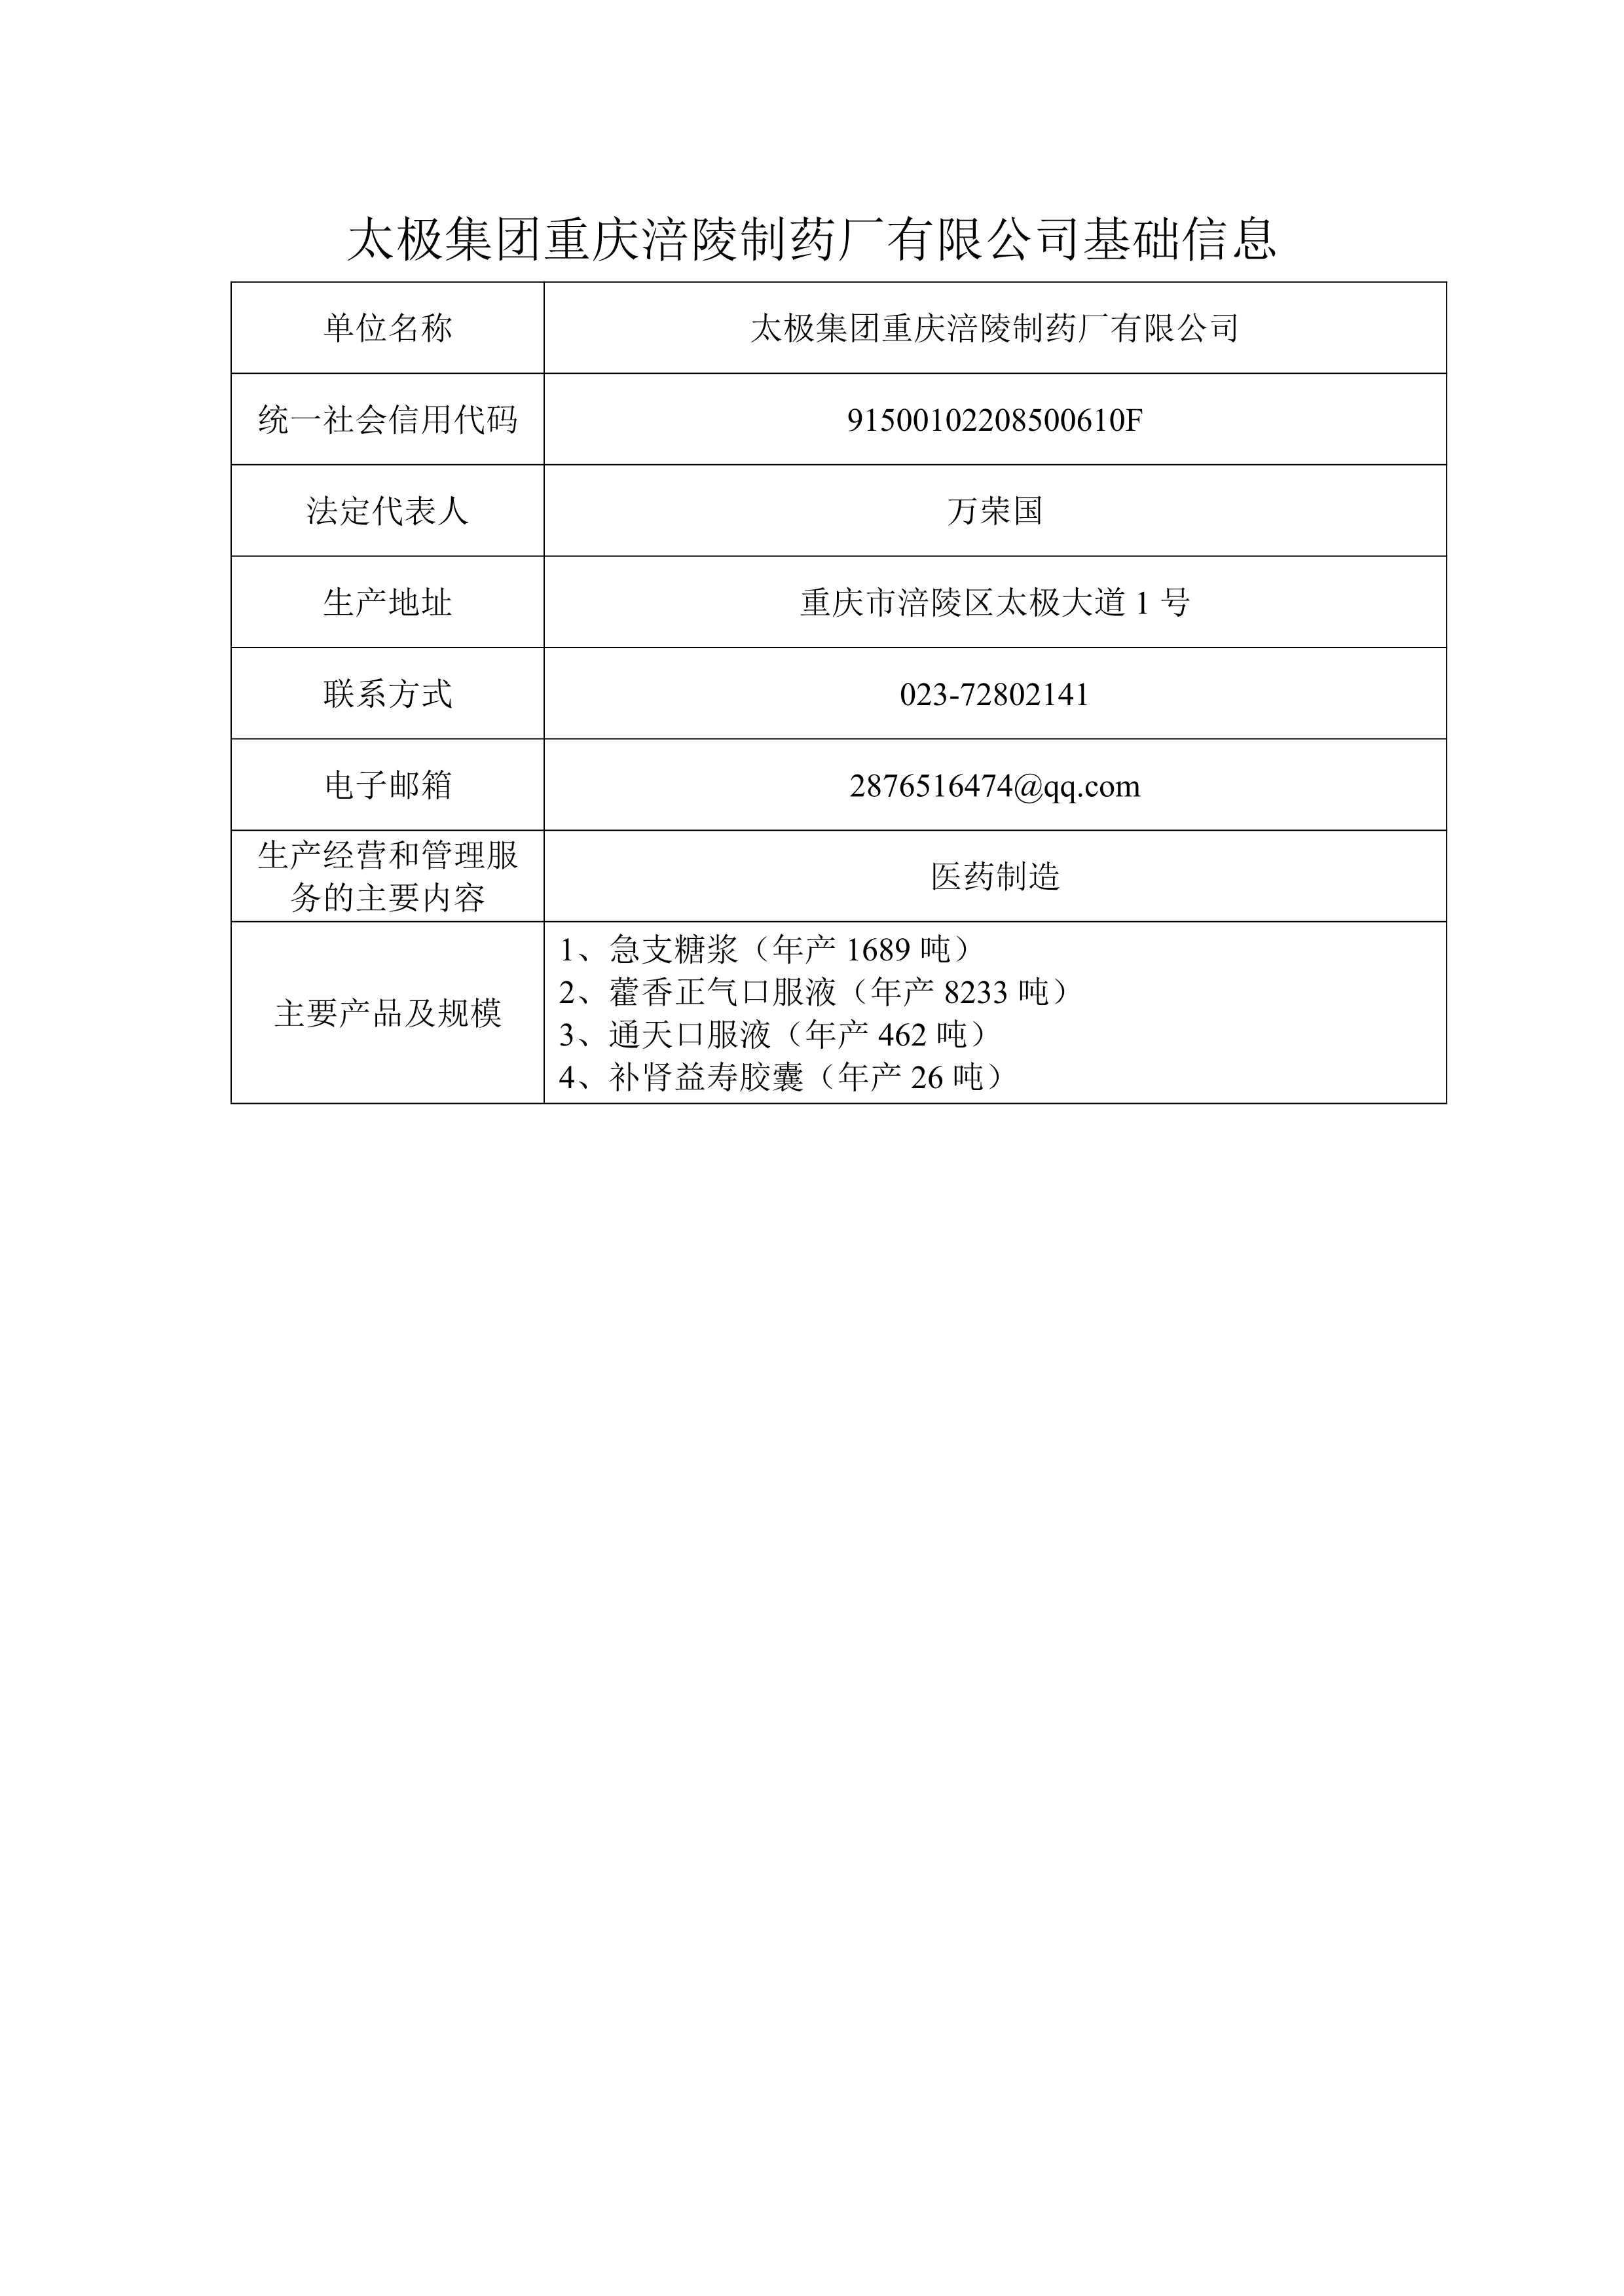 太极集团重庆涪陵制药厂有限公司基础信息_0.jpg